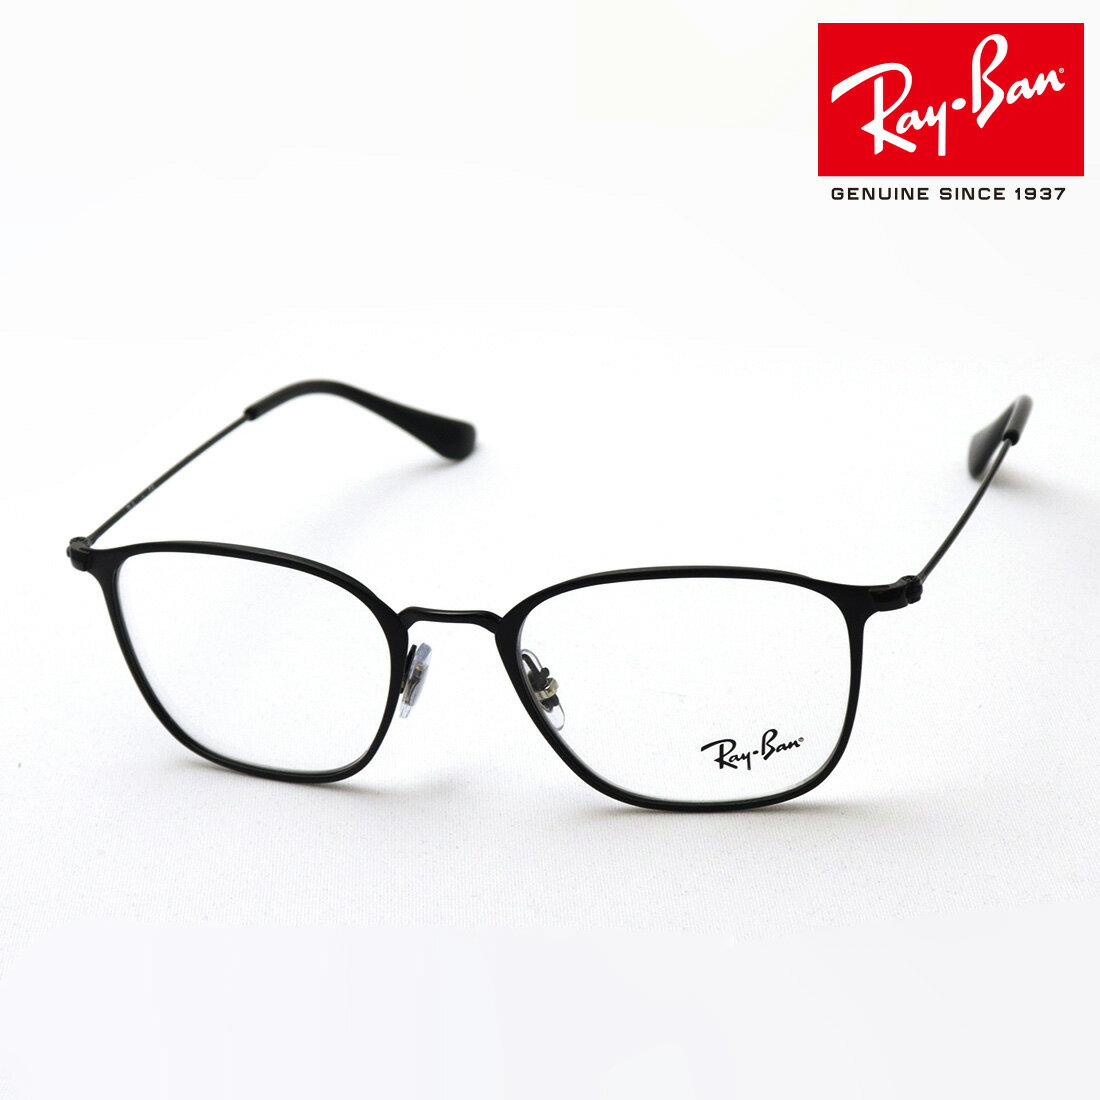 レイバン メガネ メンズ 正規レイバン日本最大級の品揃え レイバン メガネ フレーム Ray-Ban RX6466 2904 伊達メガネ 度付き ブルーライト カット 眼鏡 RayBan スクエア ブラック系